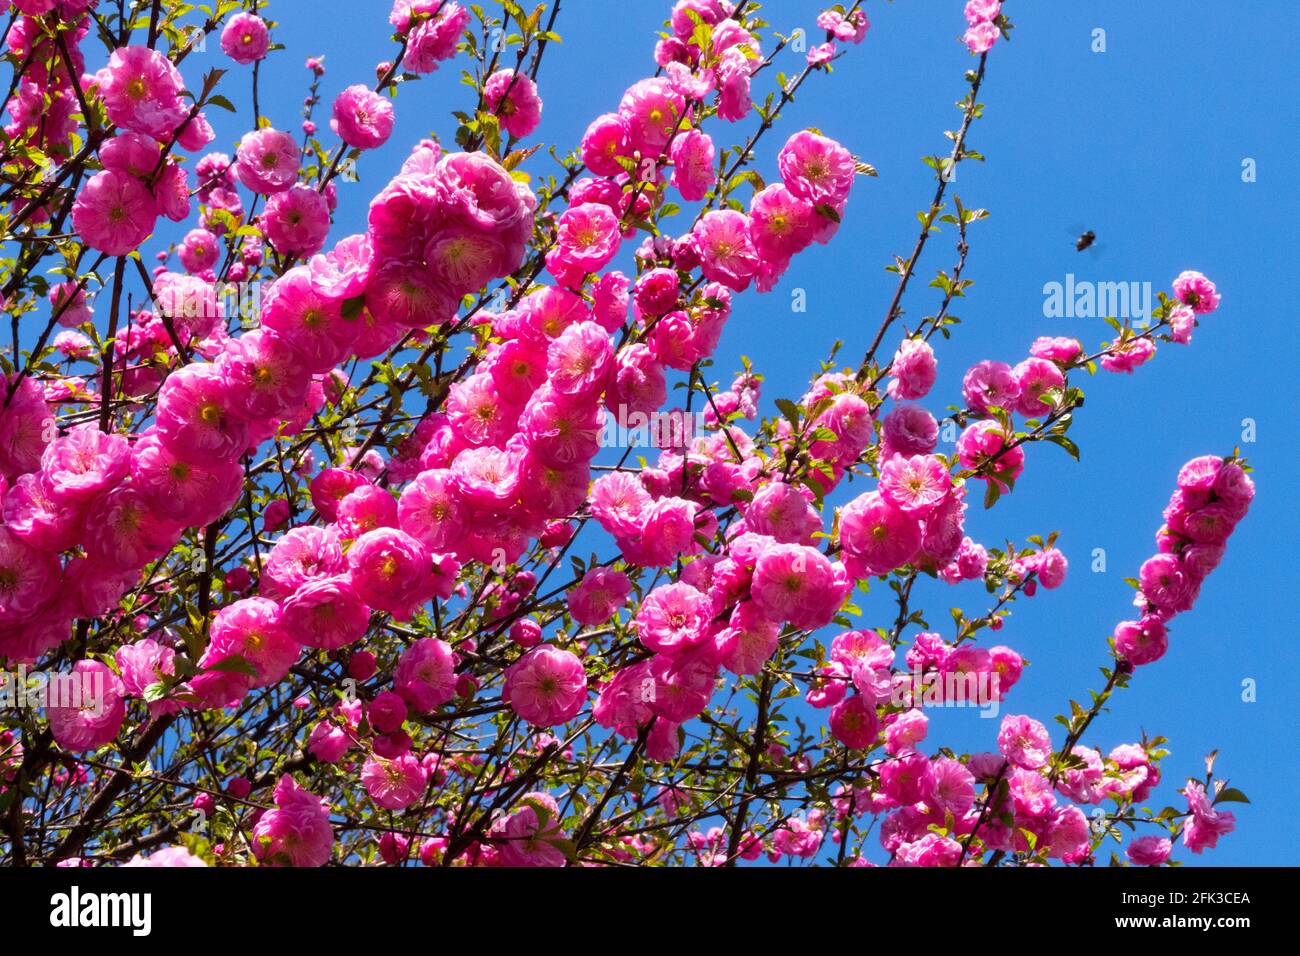 Prunus triloba 'Rosenmund' arbustes florissants fleurs roses branches arbuste Prunus Rosenmund floraison début du printemps afghan naine fleurs jardin de cerises Banque D'Images